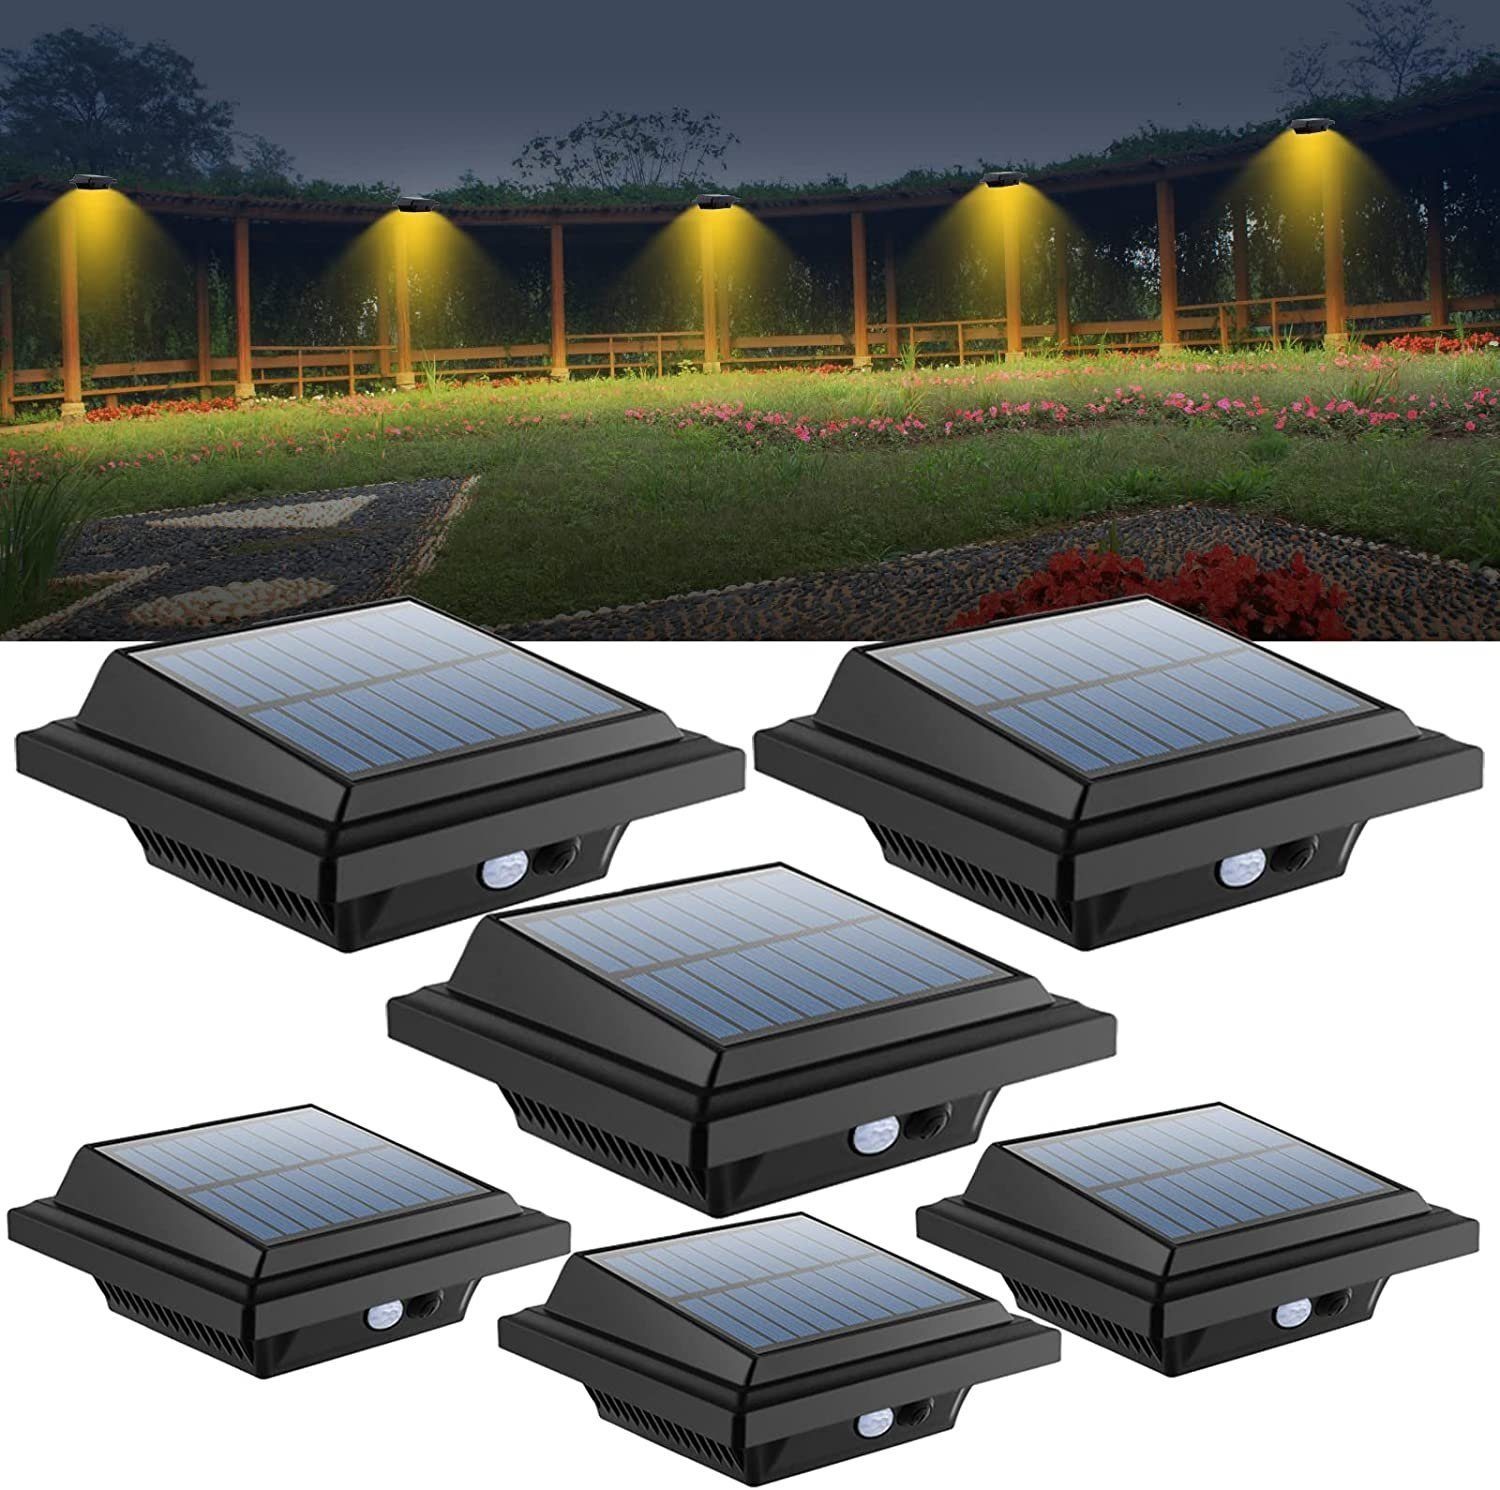 Coisini LED Dachrinnenleuchte 6Stück 40LEDs Dachrinnen Solarleuchten Wegeleuchte für Haus, Zaun, Bewegungsmelder